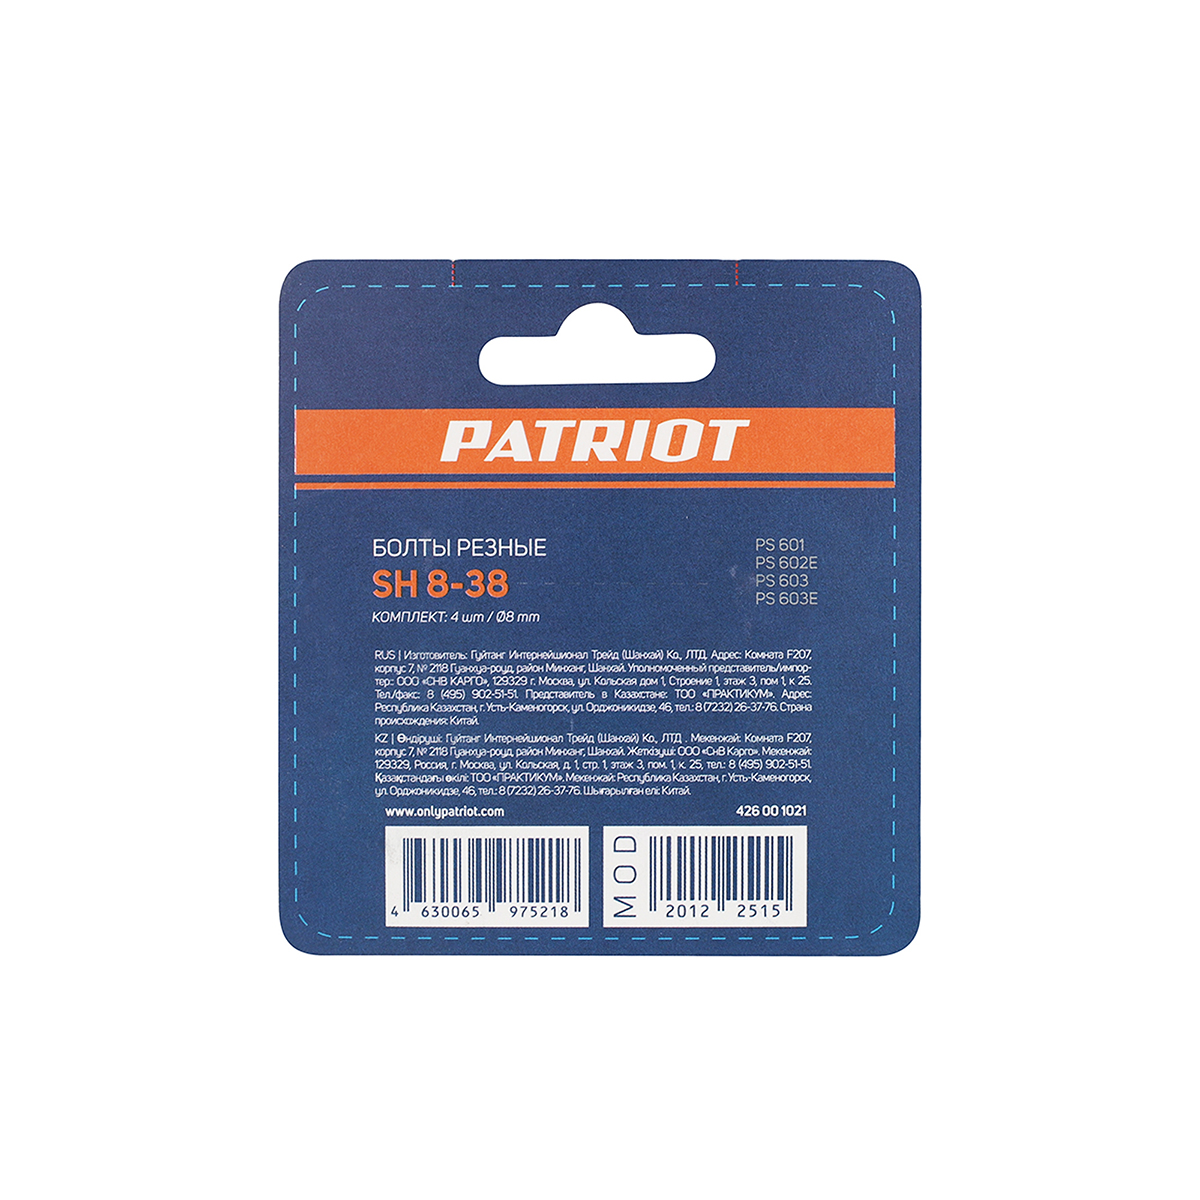 Болты срезные для шнека снегоуборщика sh 8-38  8 мм, 4 шт. (1/200) "patriot" 426001021